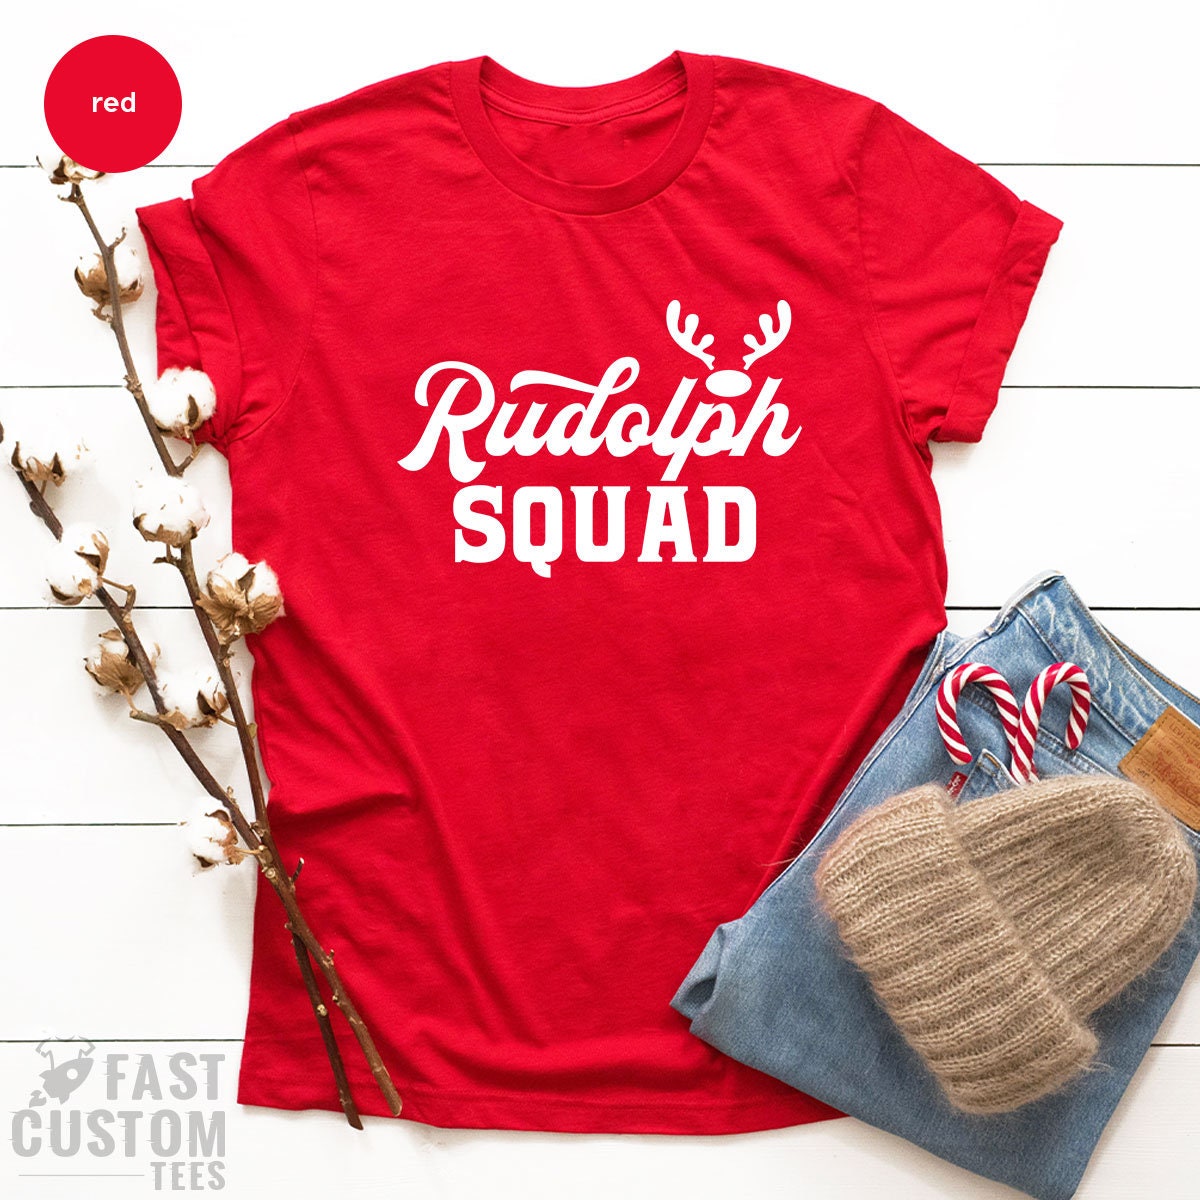 Rudolph Squad Shirt, Funny Christmas Shirt, Santa Shirt, Happy Christmas Shirt, Christmas Deer Shirt, Family Christmas, Gift For Christmas - Fastdeliverytees.com